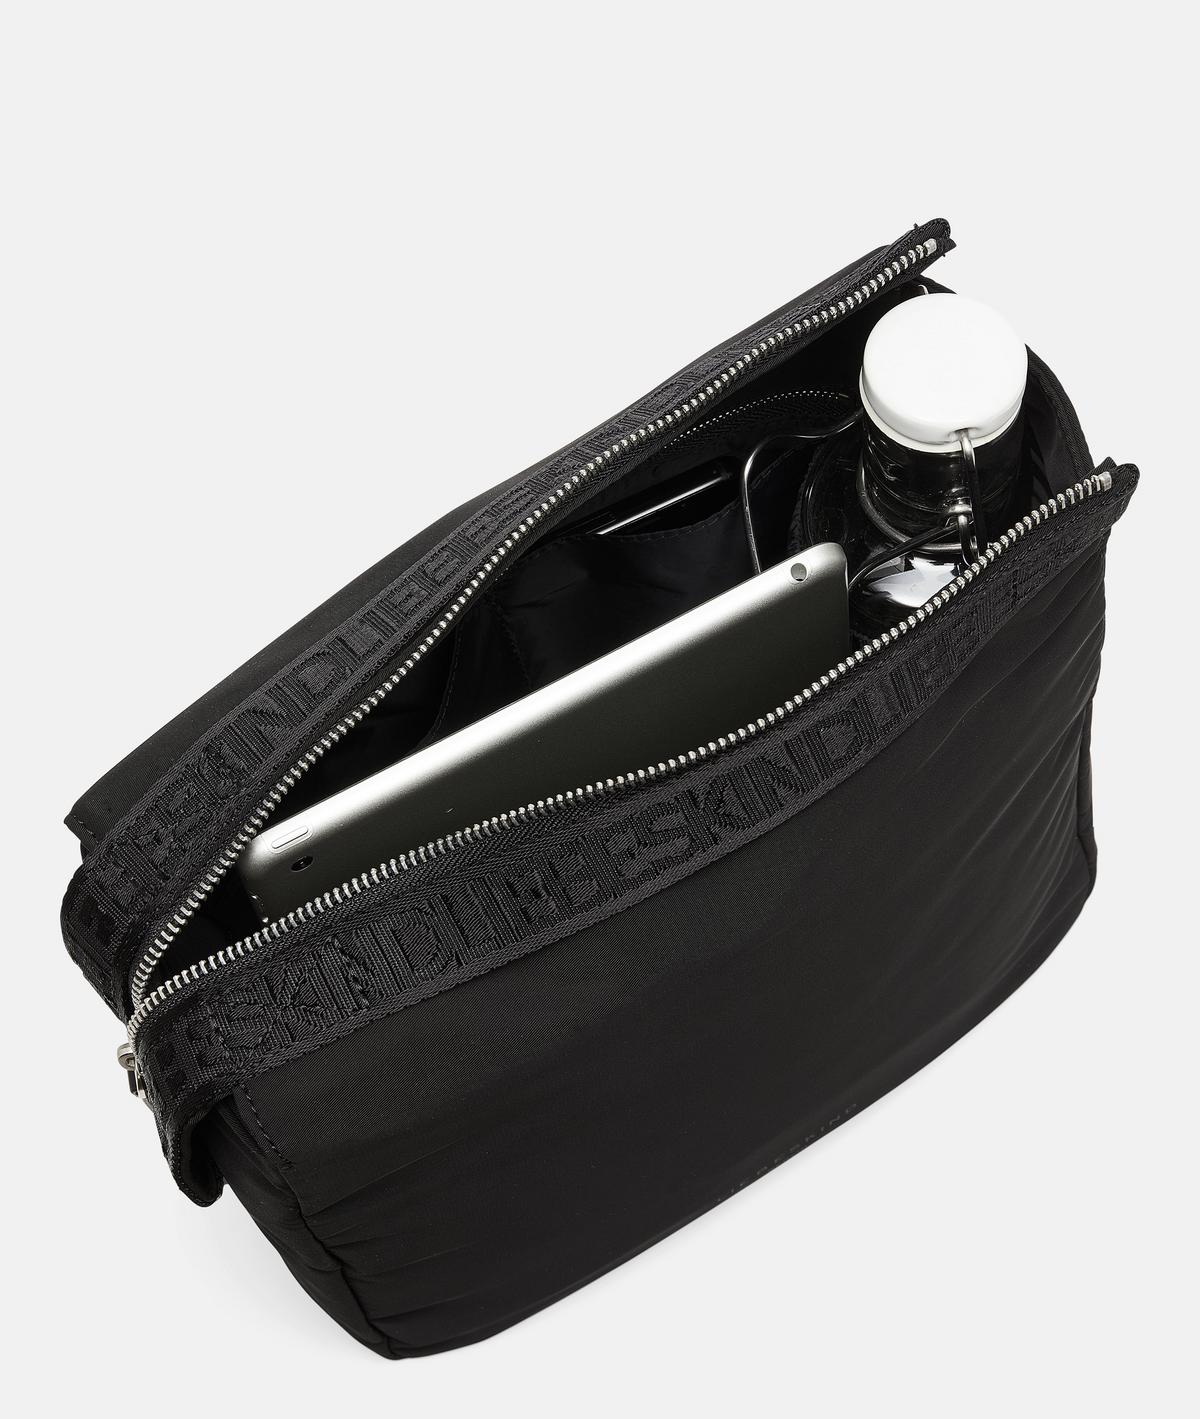 Taschenorganizer Zip M - schwarz